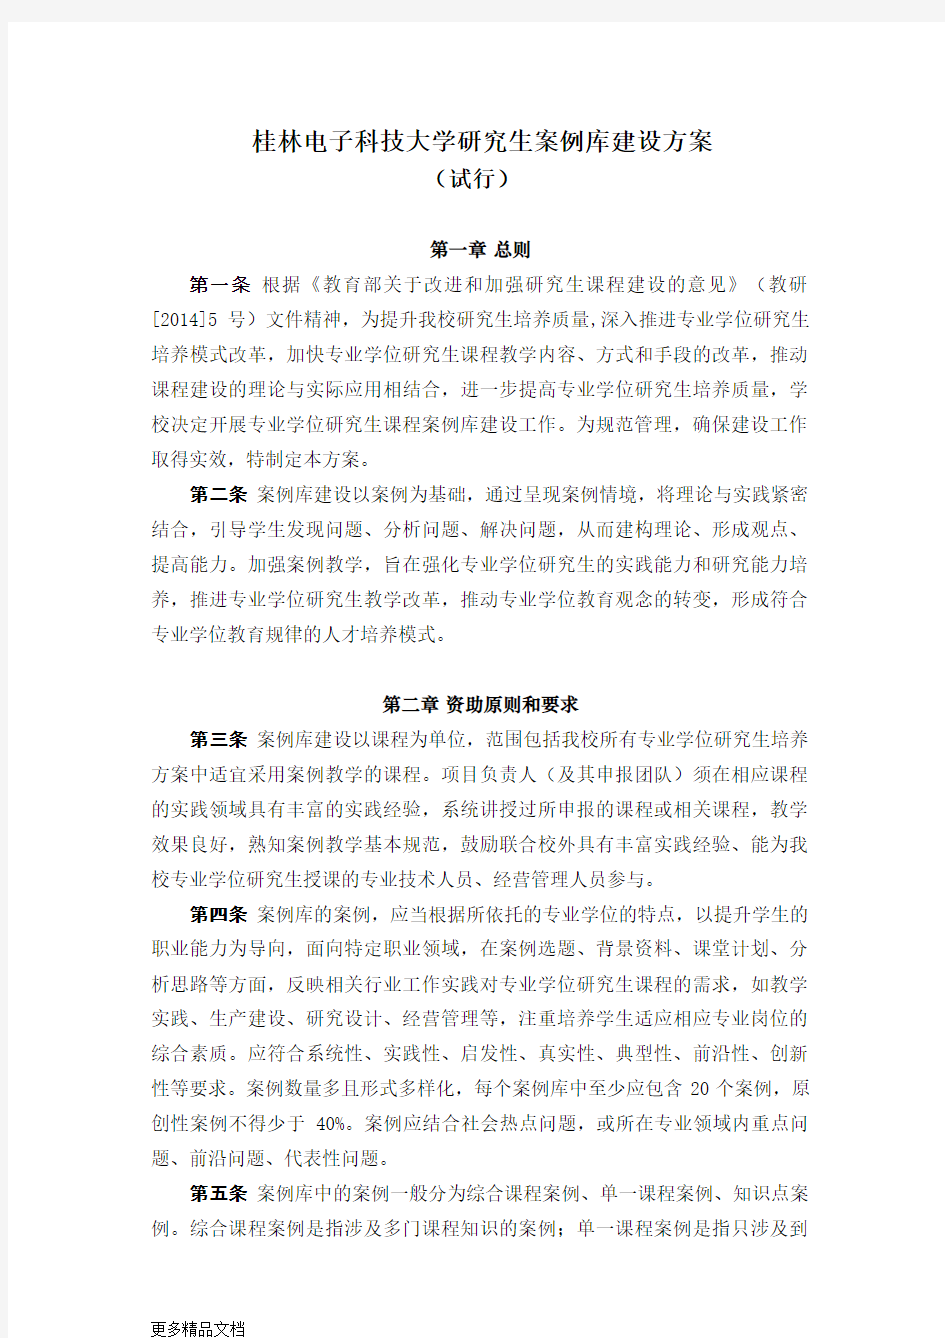 桂林电子科技大学研究生案例库建设方案教学文案